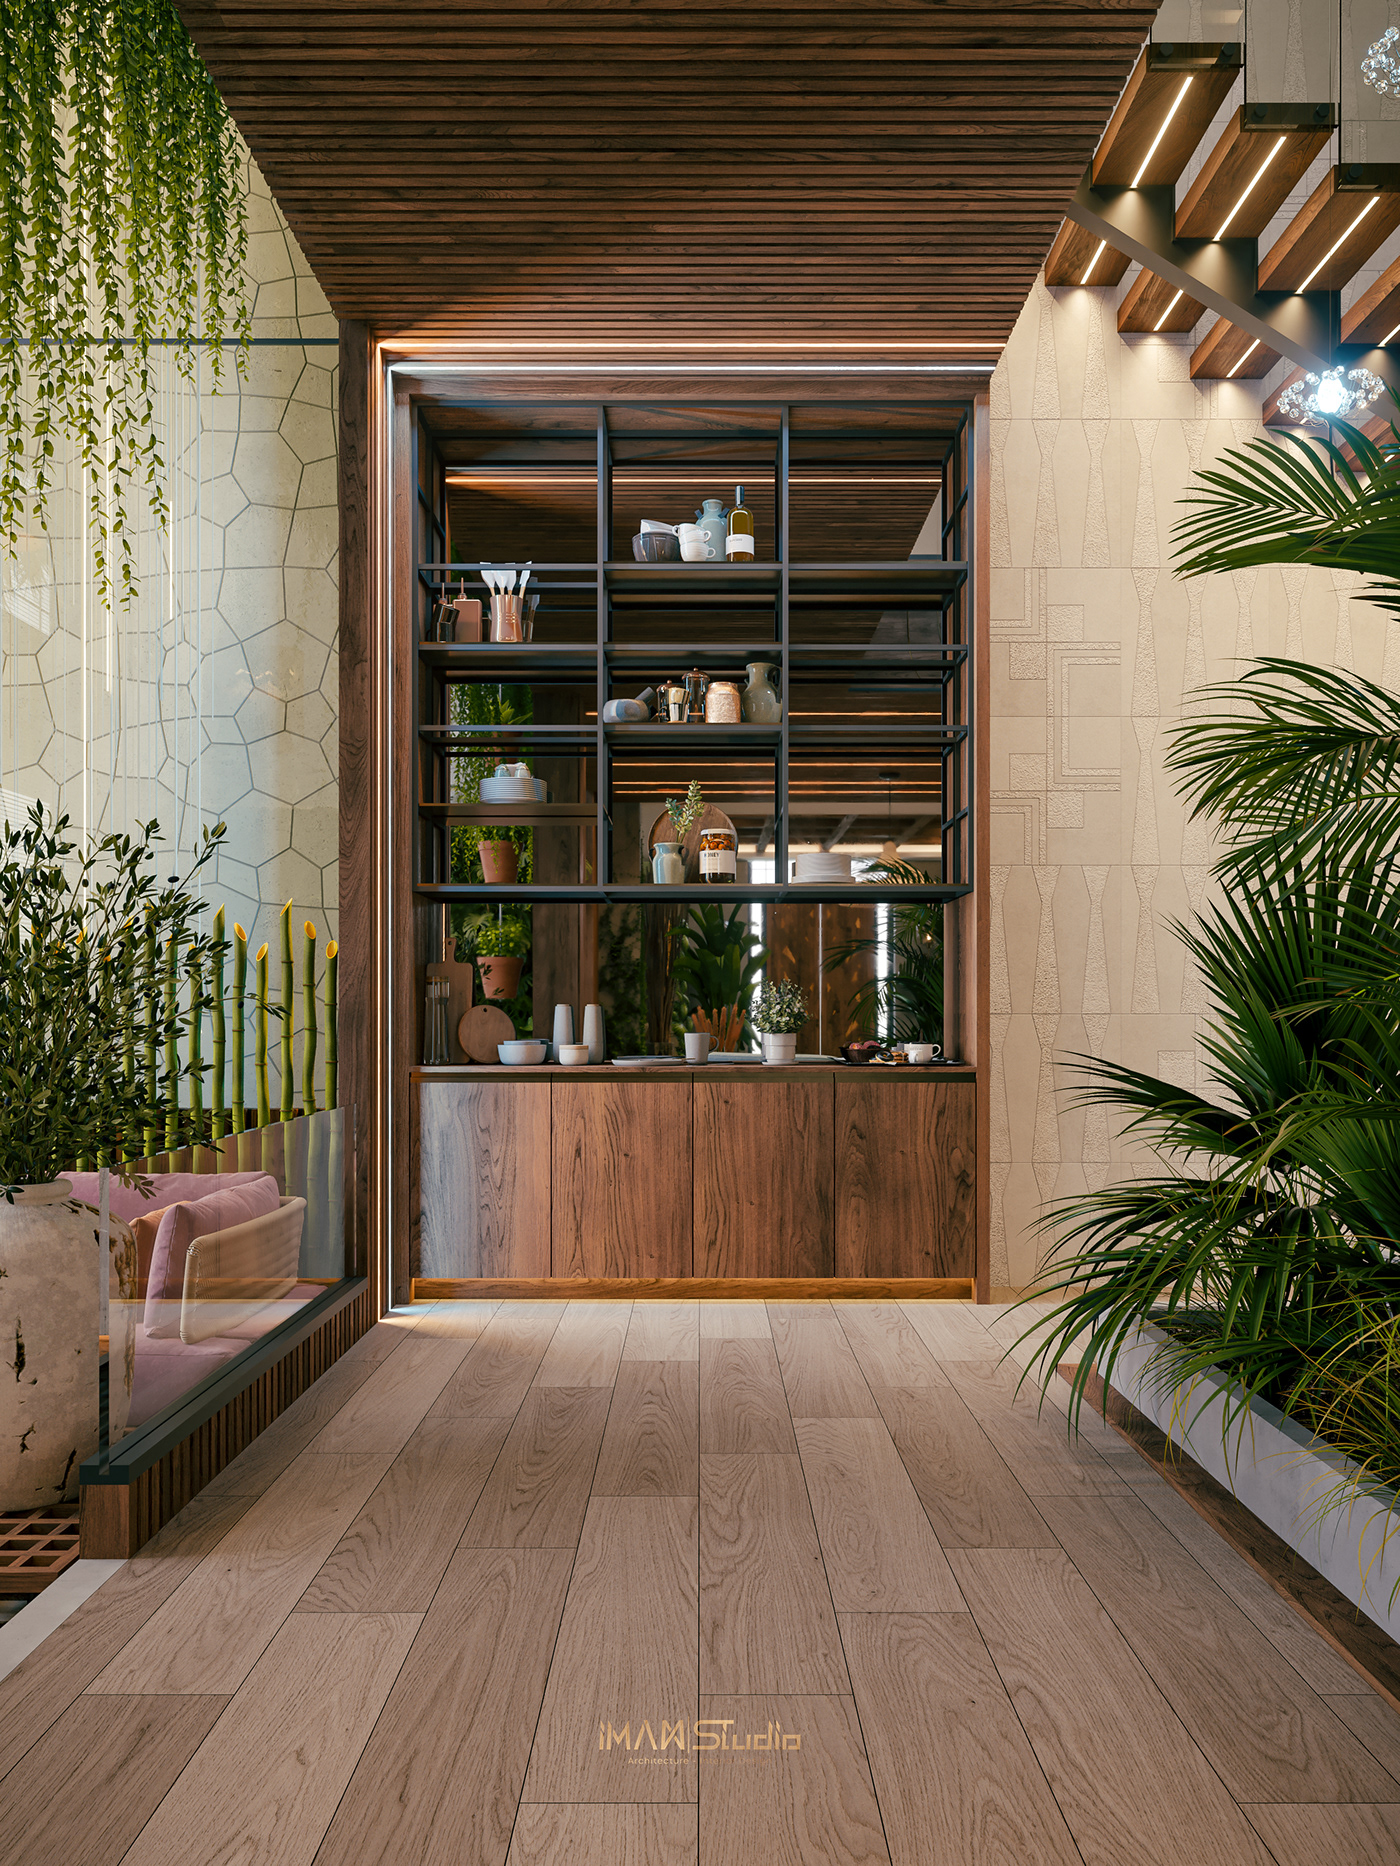 architecture archviz garden interior design  Into the nature Spa Tropical visualization